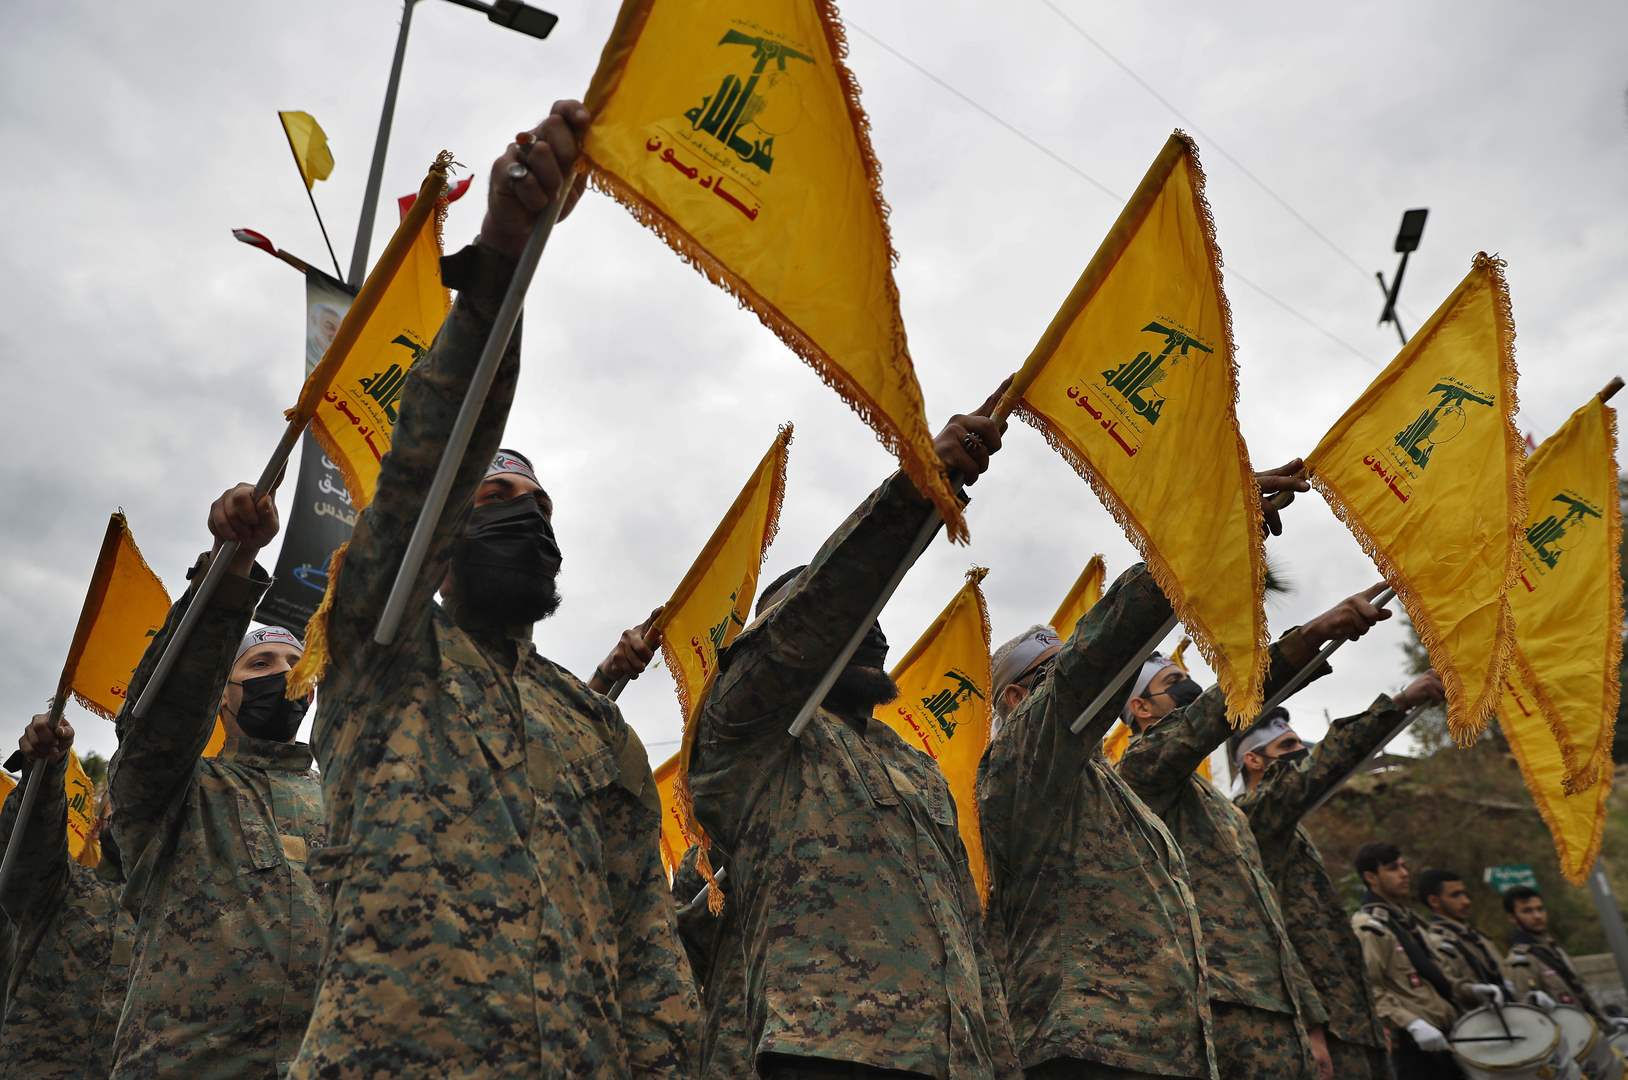 معلومات عن عمل وتوصيف قاعدة نفح التي إستهدفها حزب الله 